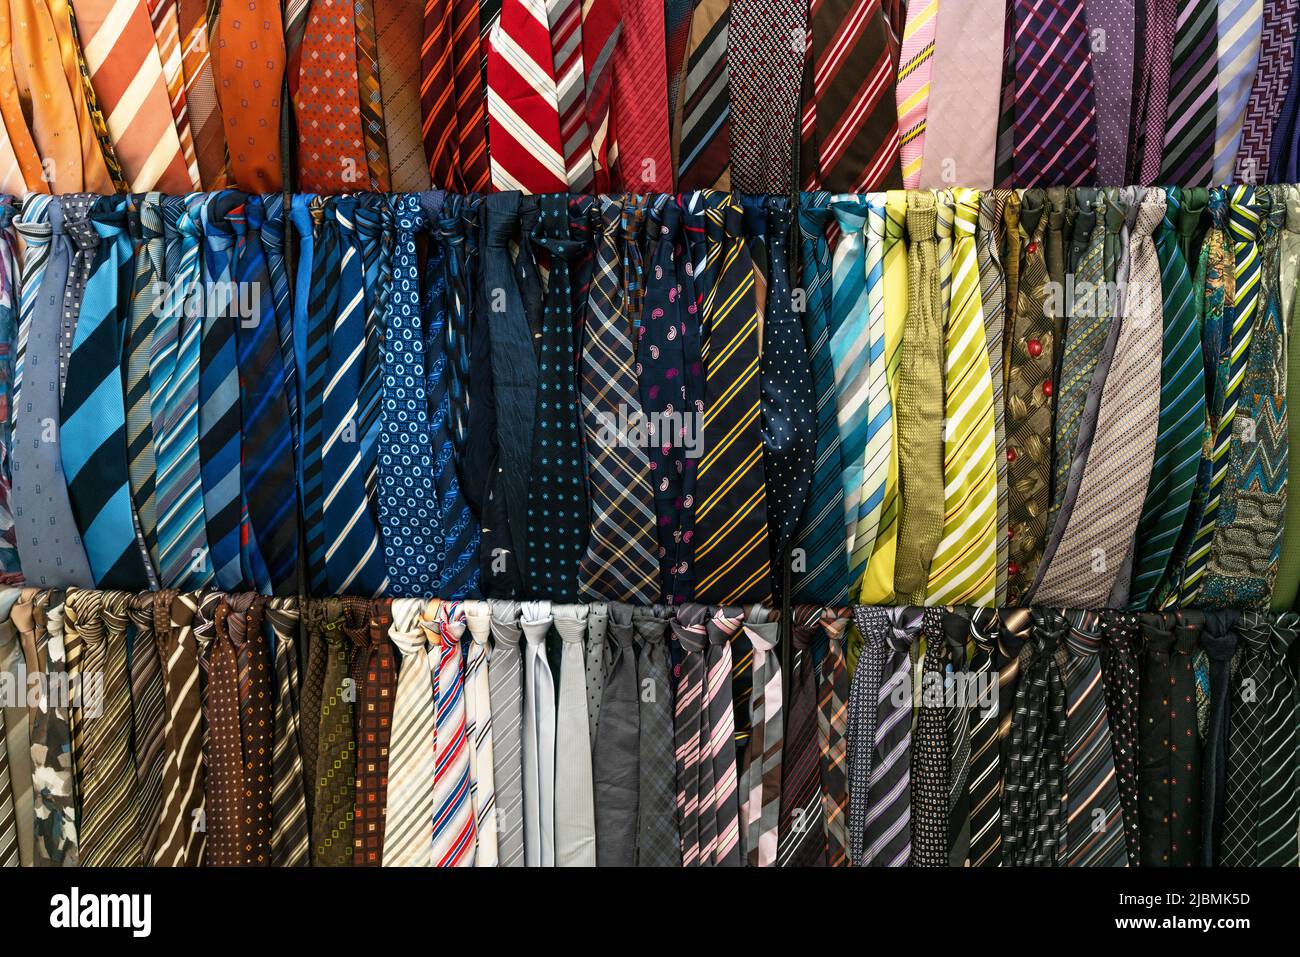 Magasin de cravate Banque de photographies et d'images à haute résolution -  Alamy